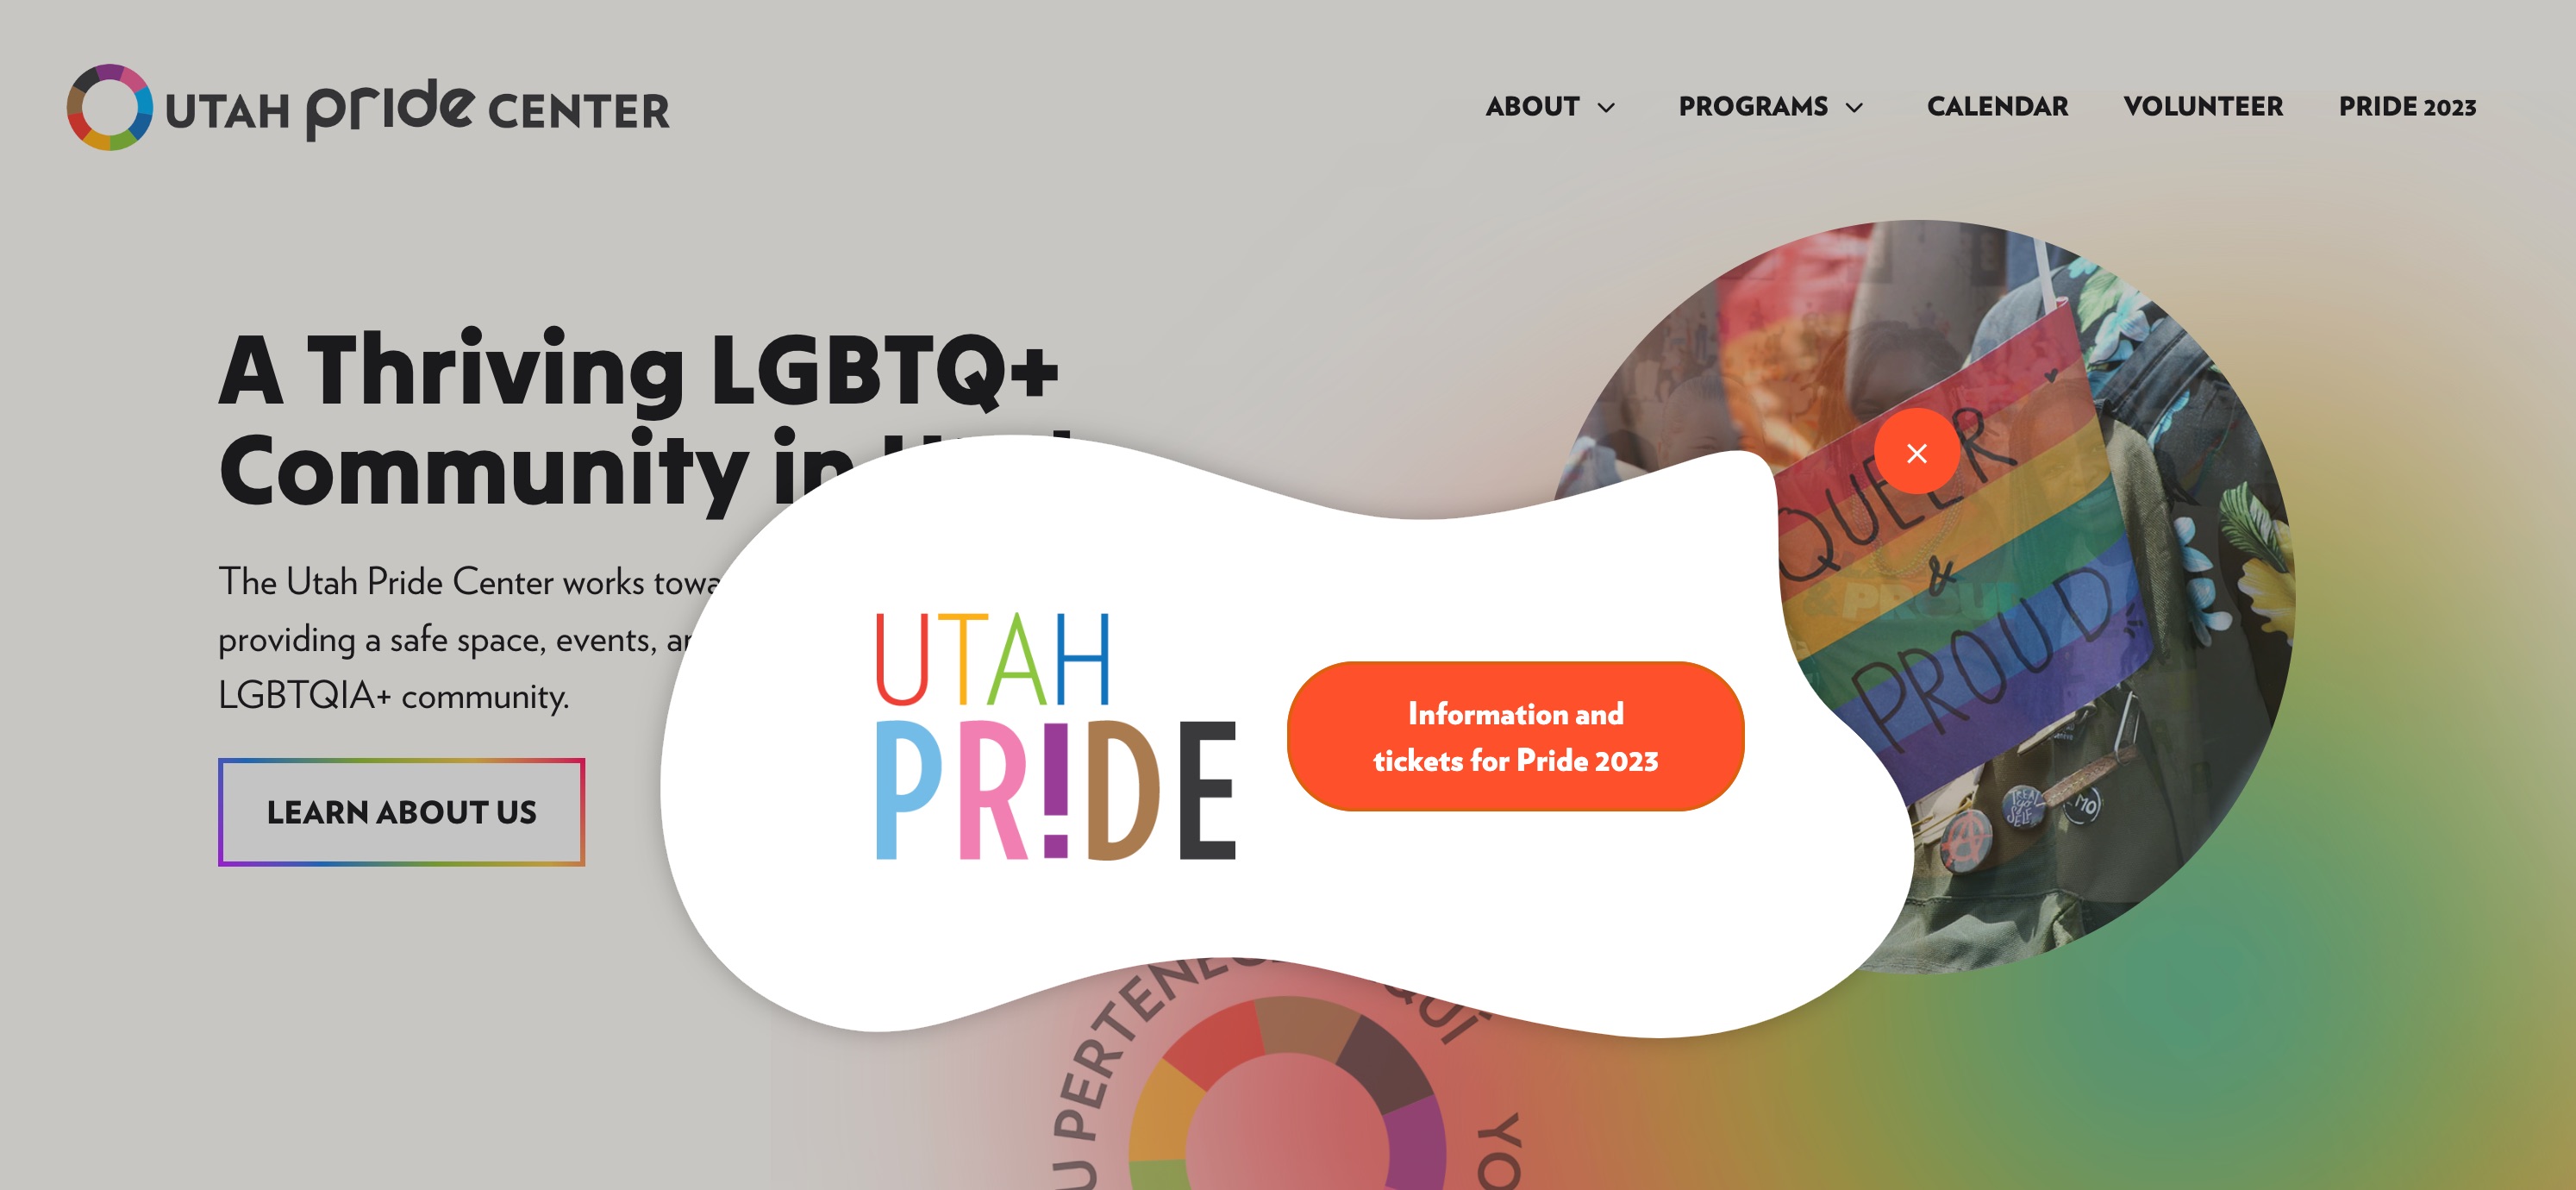 Utah Pride Center popup